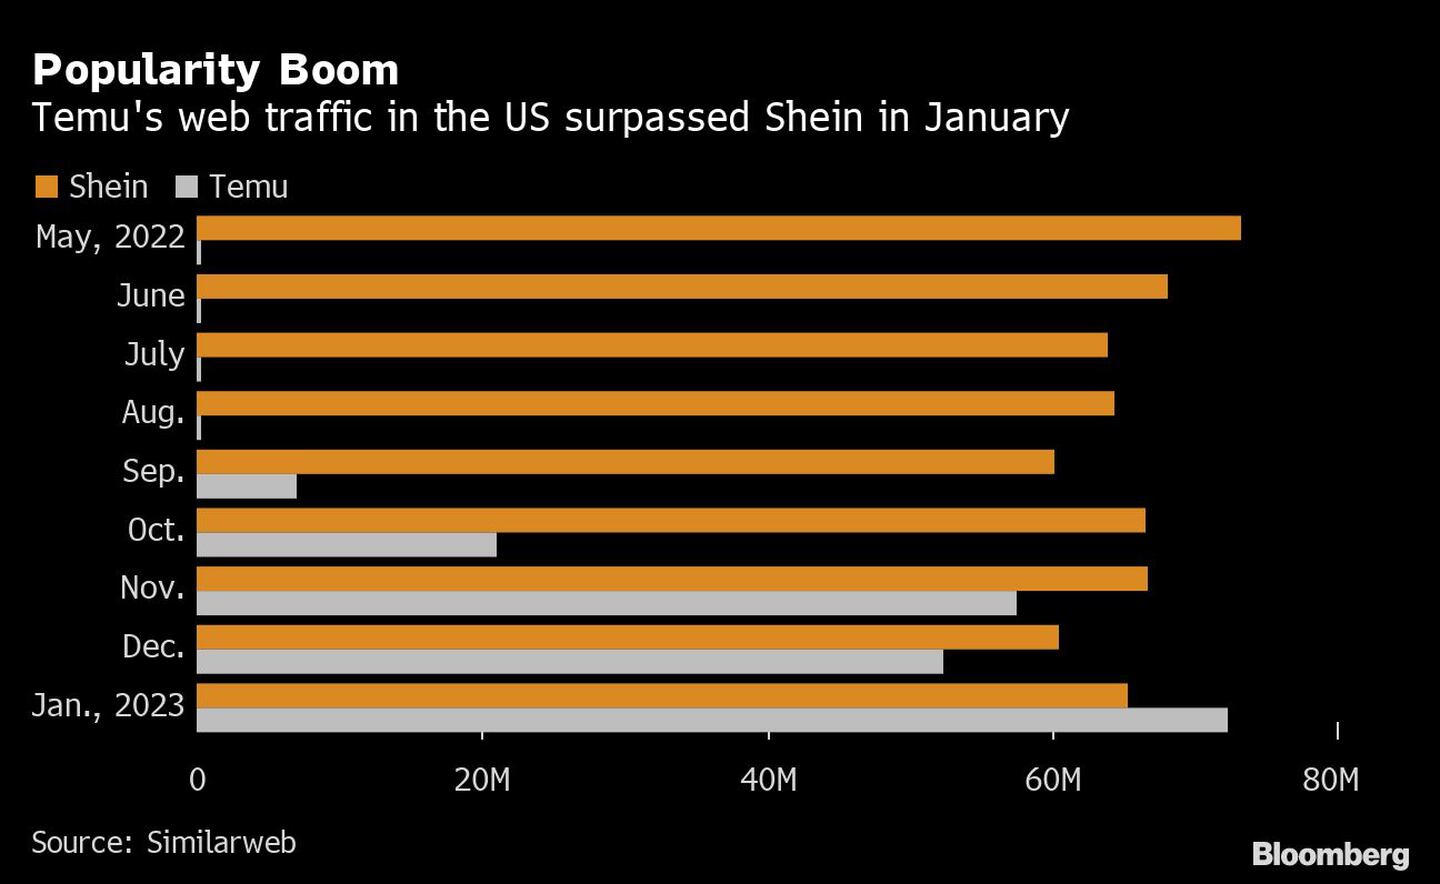 Boom de popularidad | El tráfico web de Temu en EE.UU. superó al de Shein en enerodfd